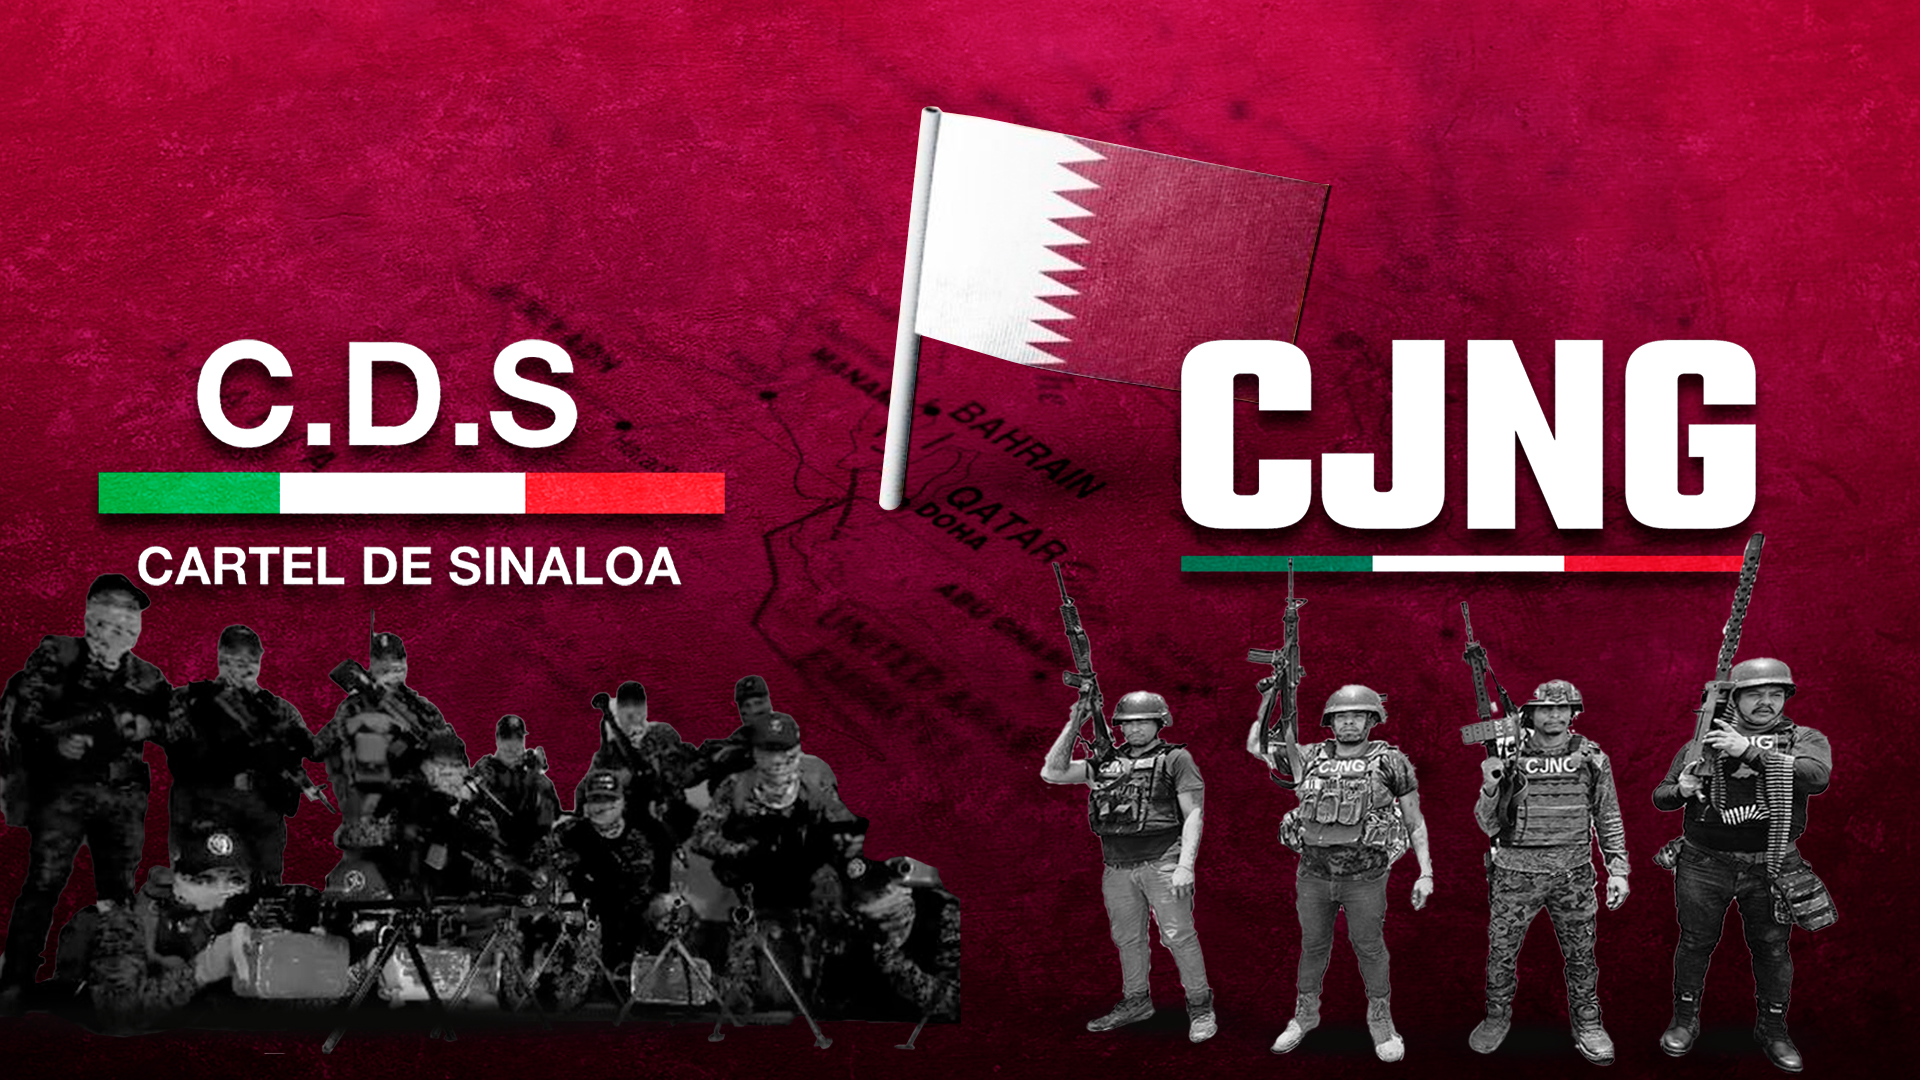 El CJNG y el Cártel de Sinaloa se han expandido a través e alianzas con otros grupos criminales
(Foto: Iinfobae/Jesús Abraham Avilés)